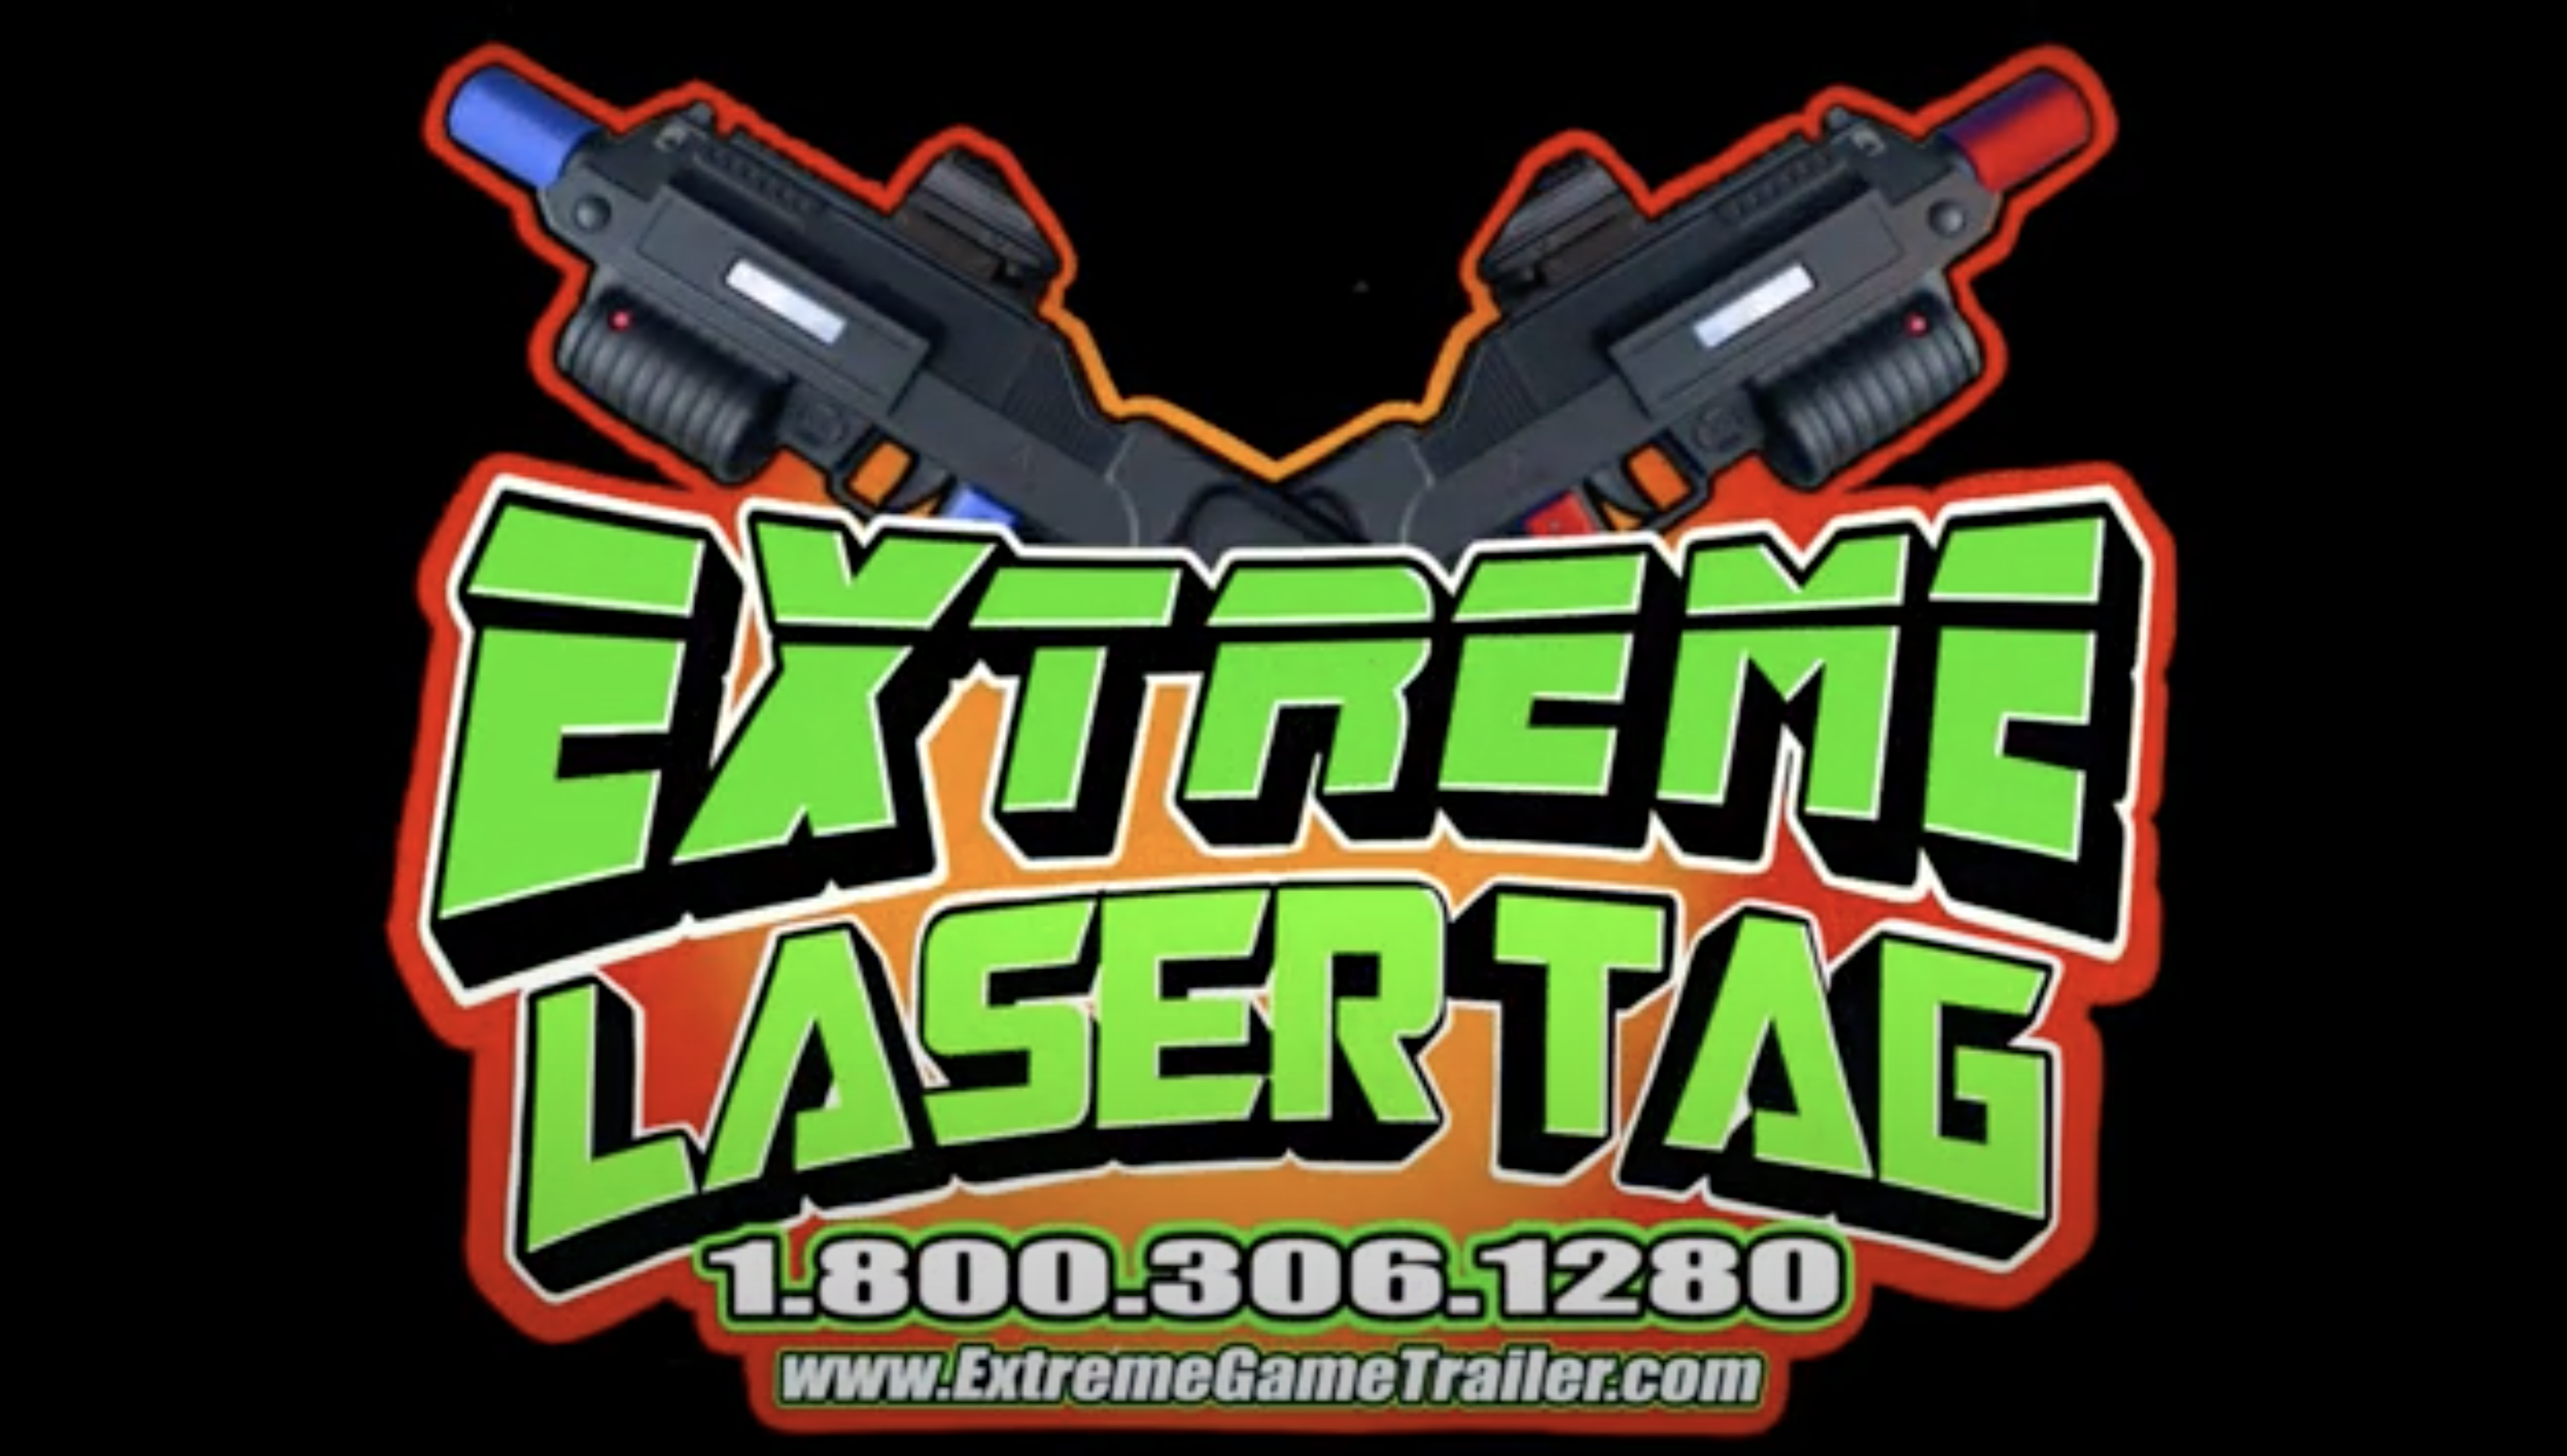 Lasertag Extreme München Trailer 